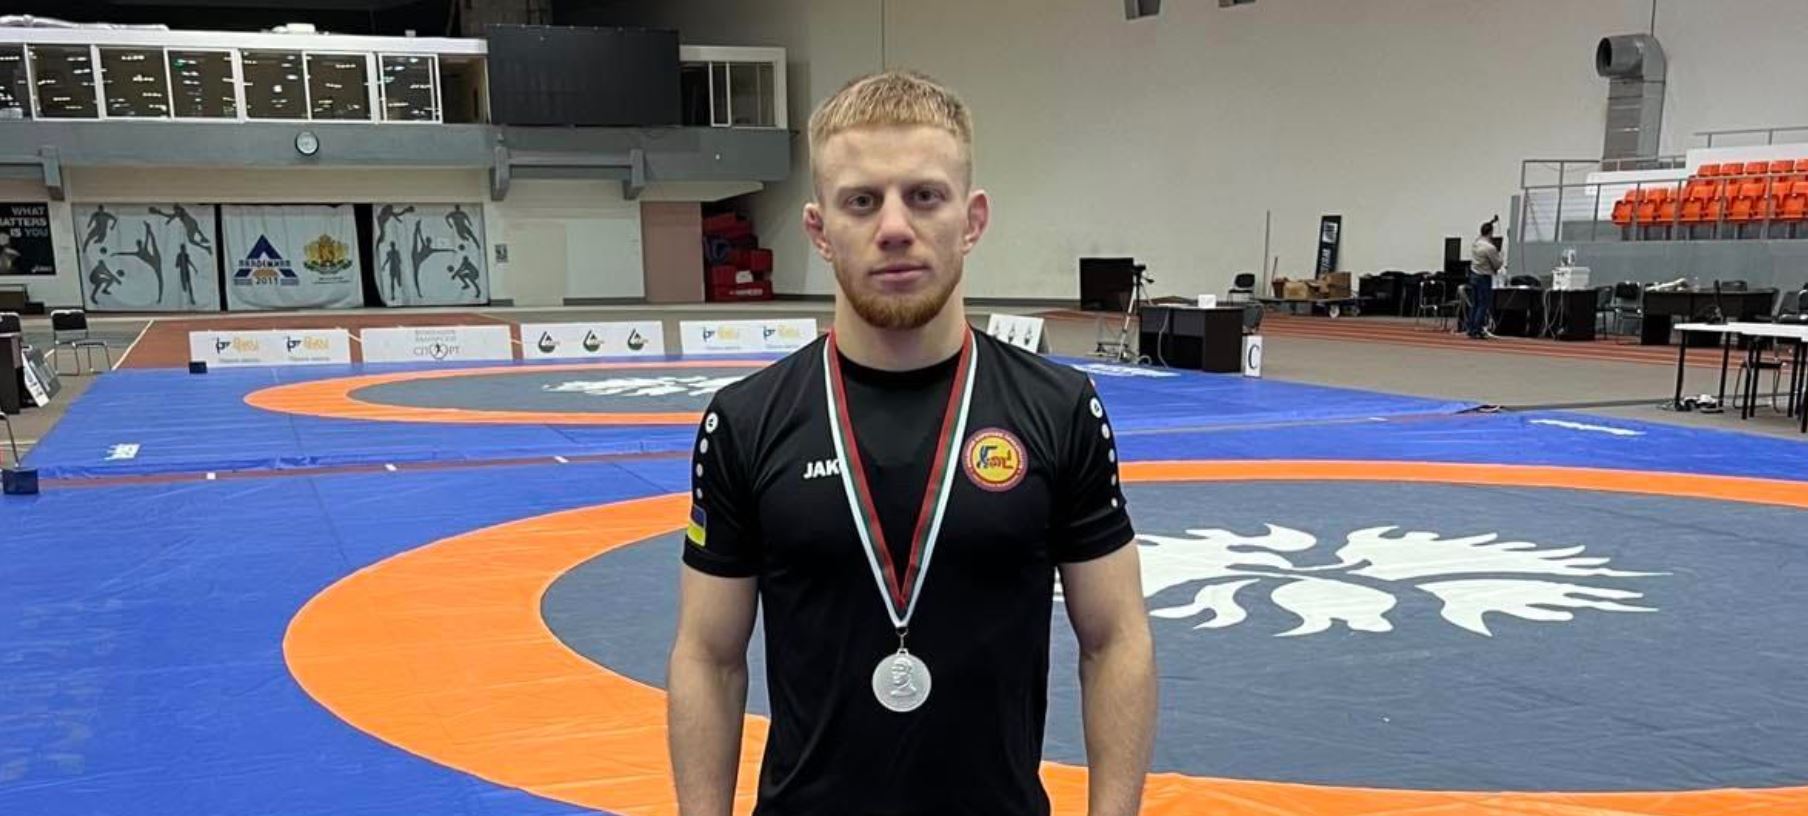 Ще один прикарпатський борець здобув нагороду на турнірі у Болгарії